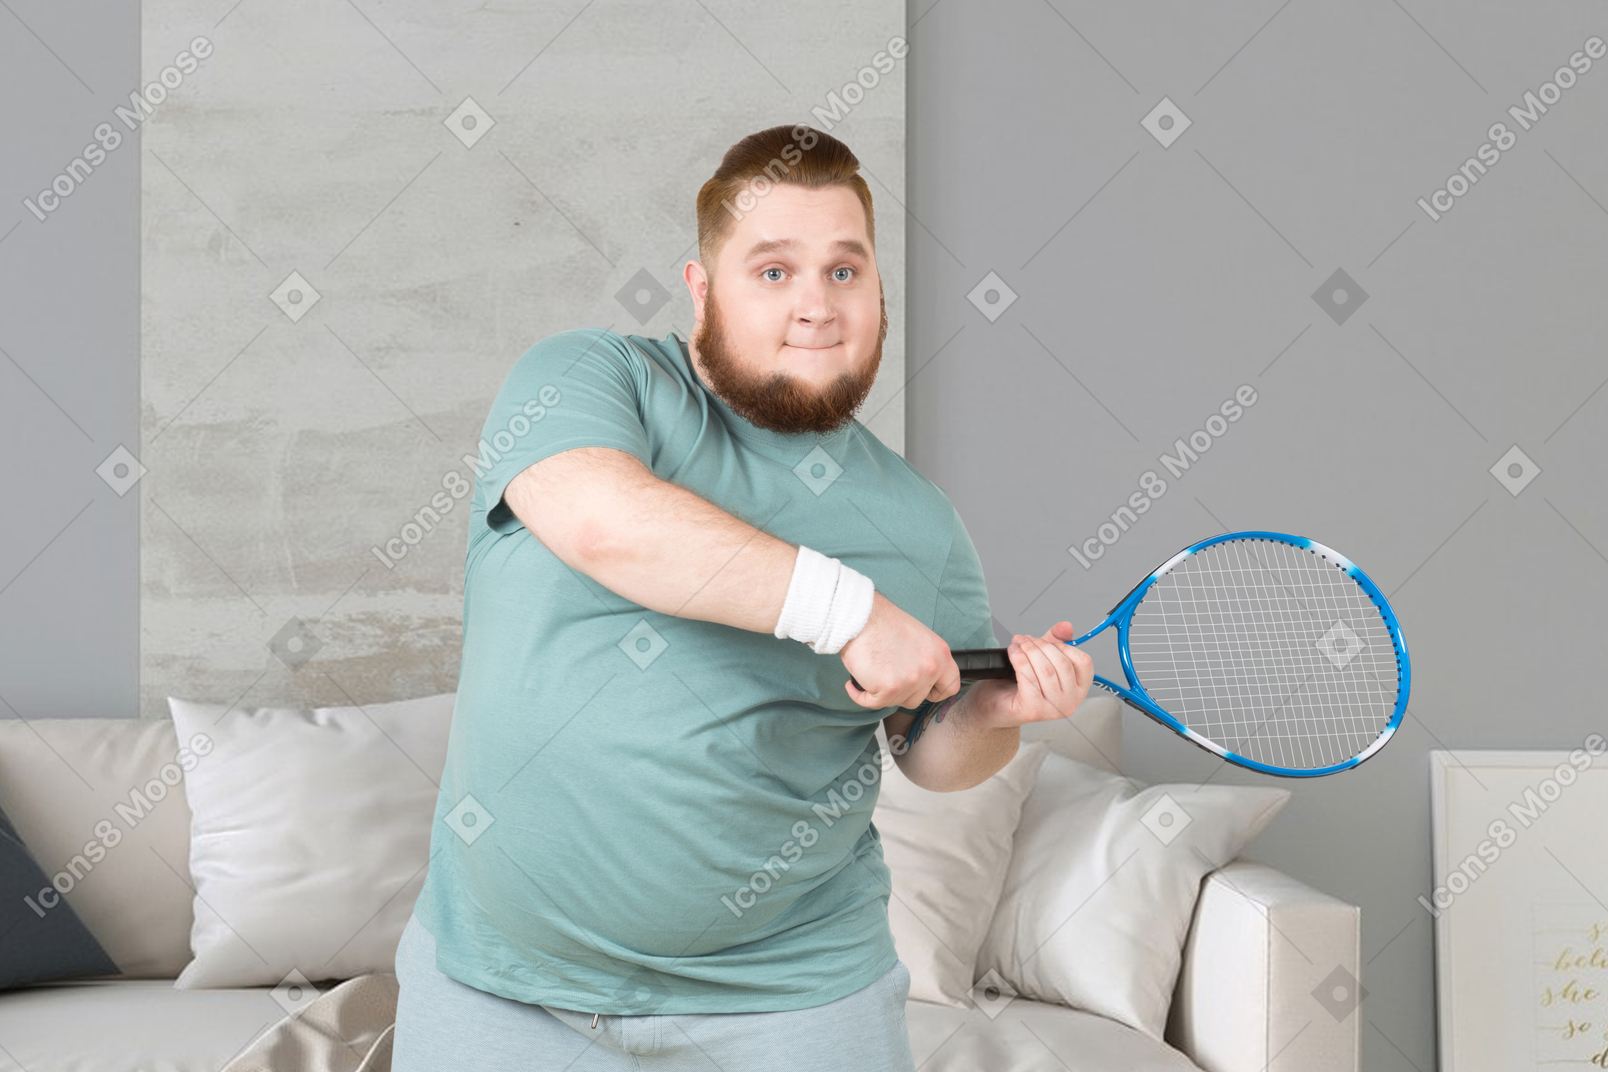 Playing tennis on lockdown days